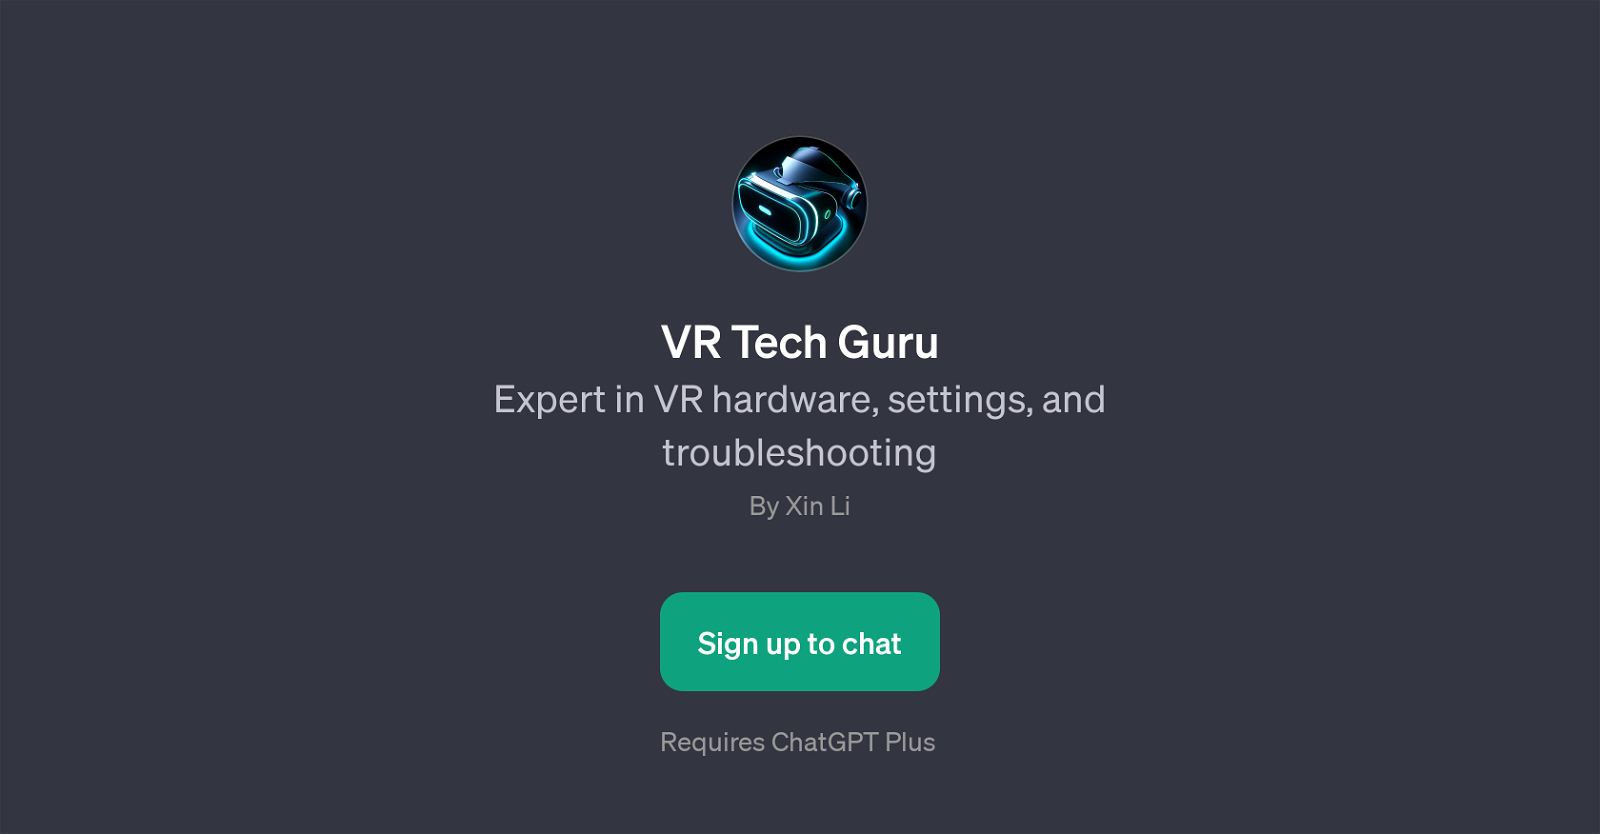 VR Tech Guru website